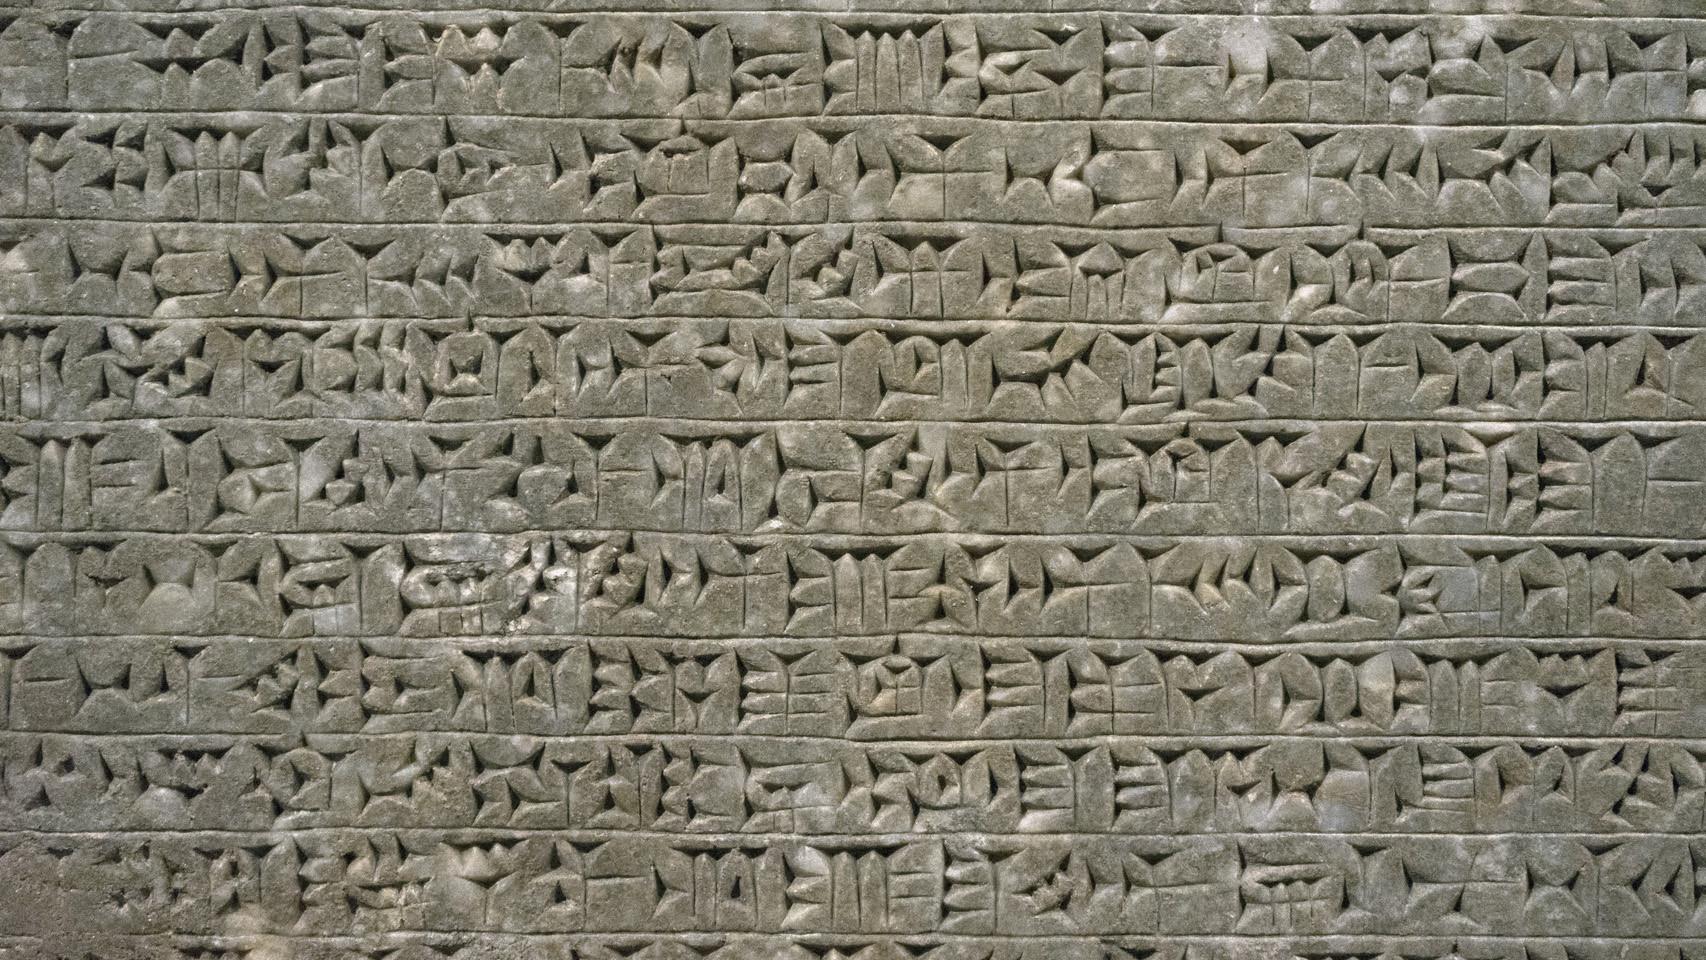 Texto en acadio cuneiforme.